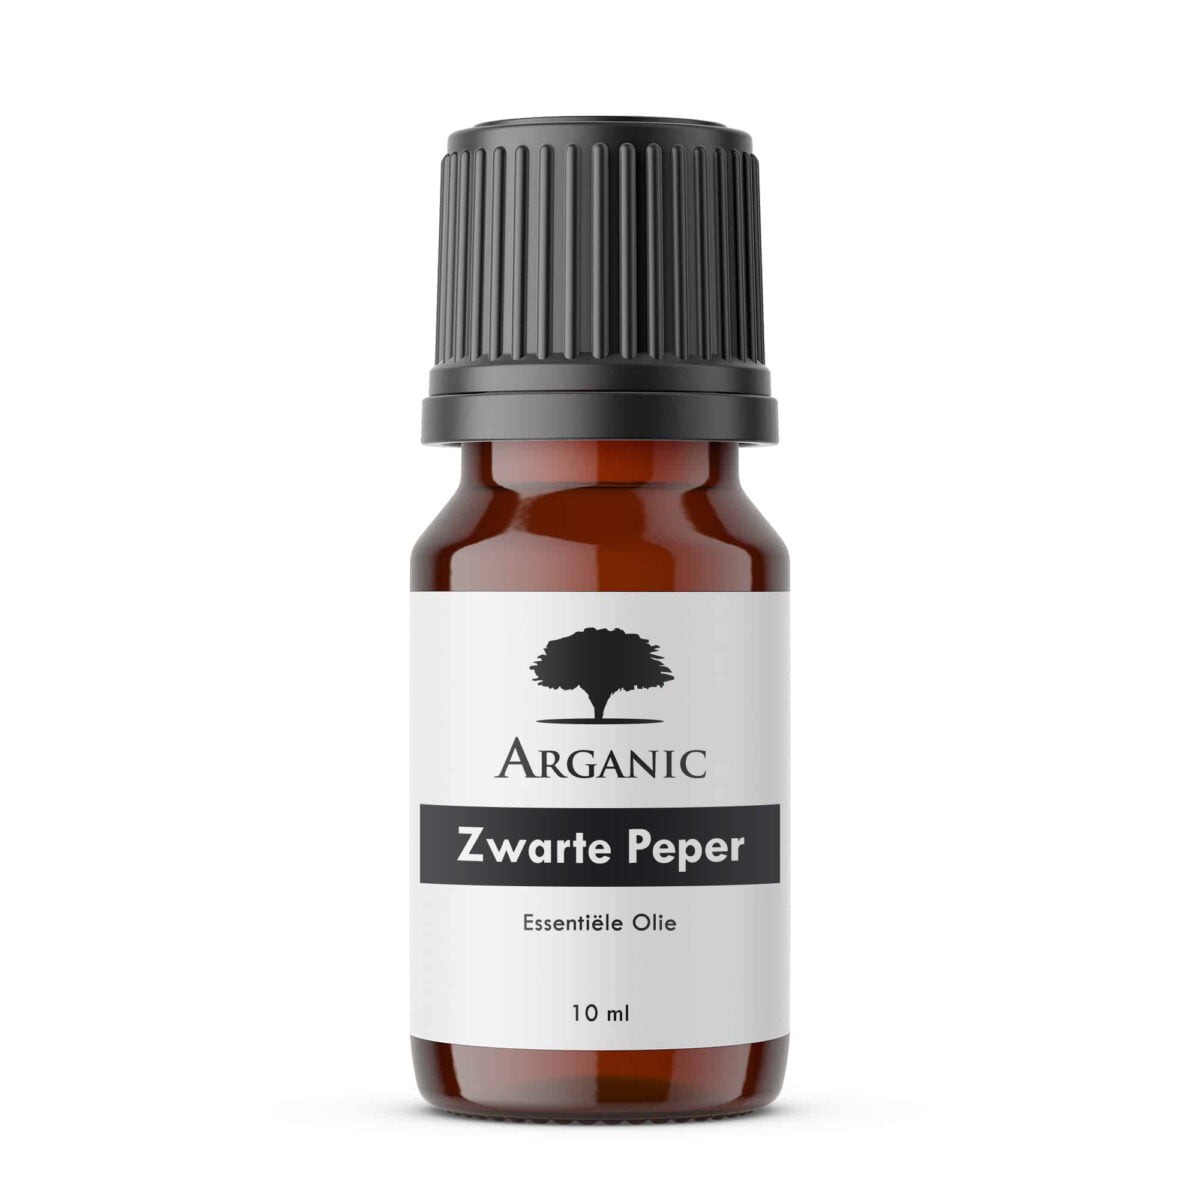 Arganic Zwarte Peper - Etherische Olie - 10ml